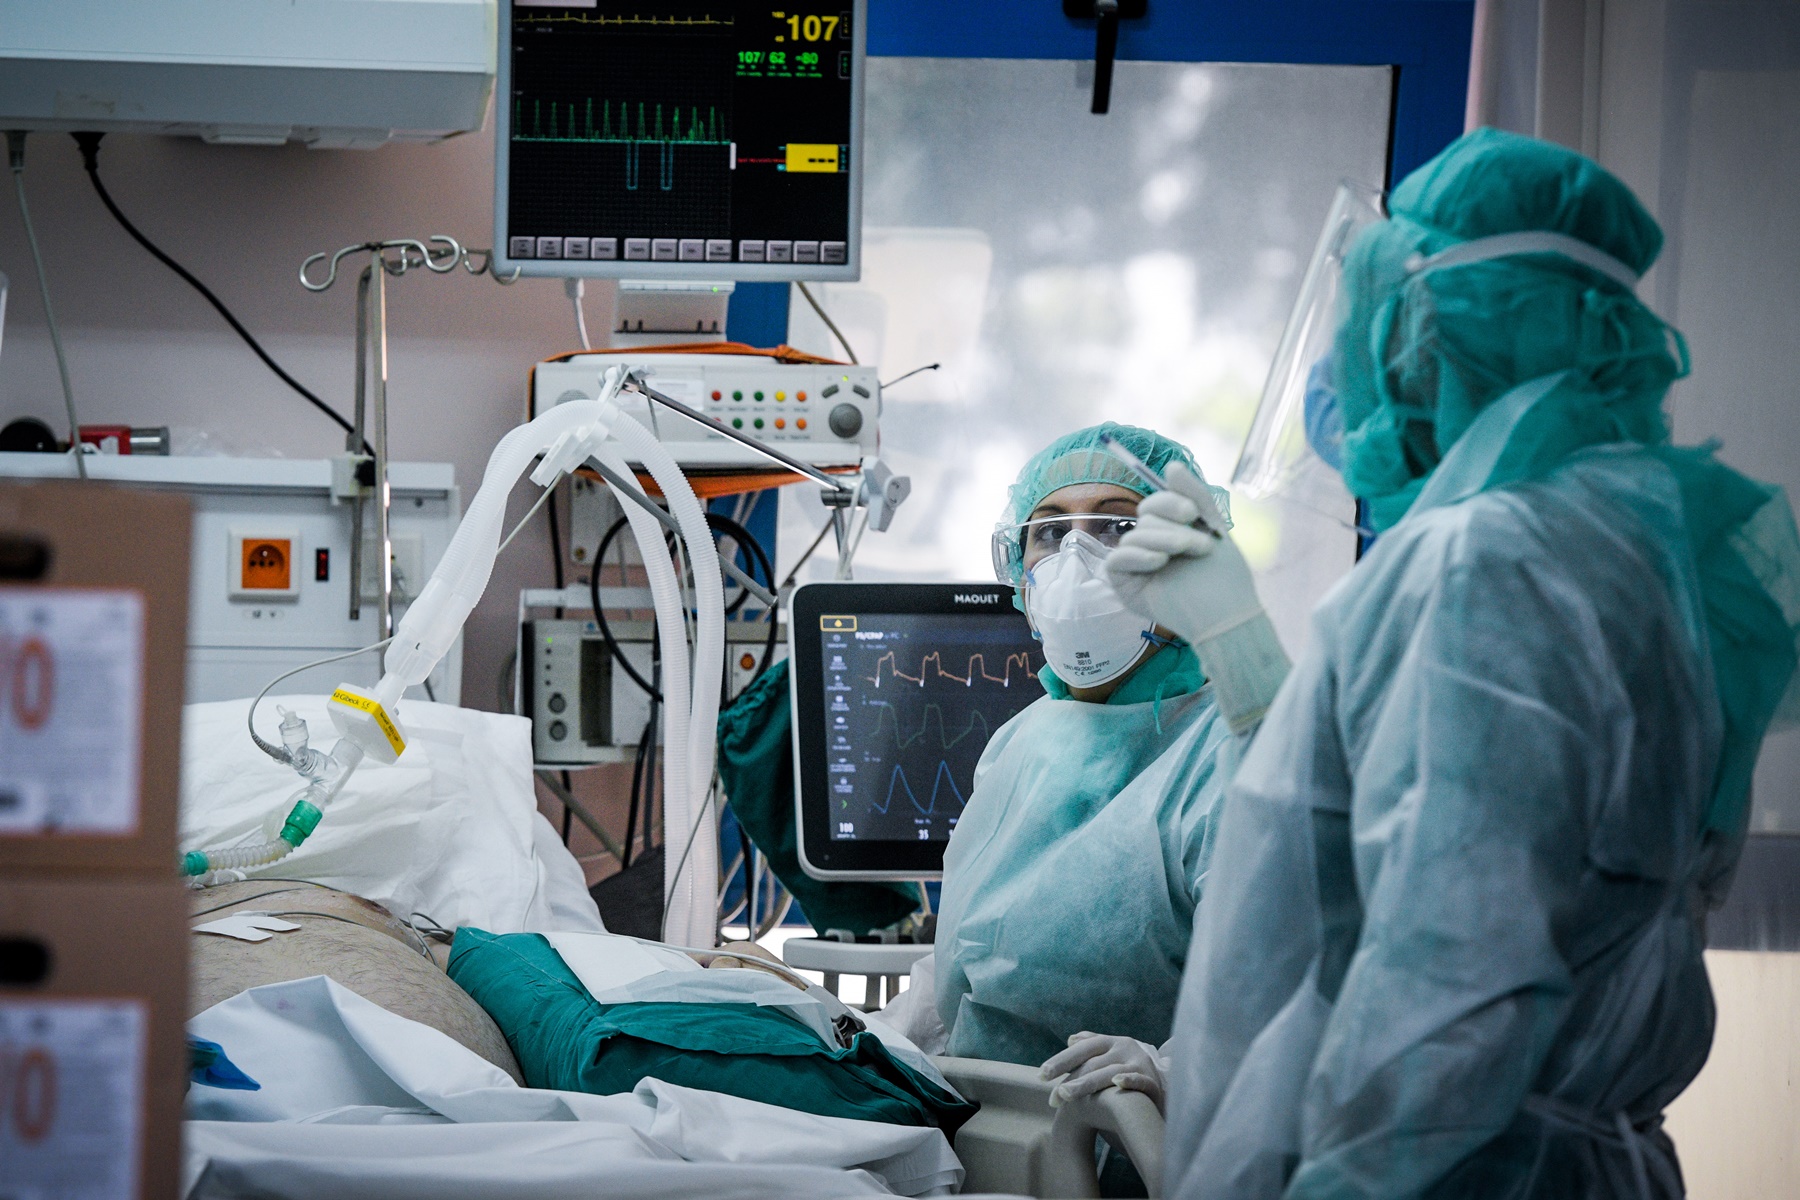 36χρονη έγκυος κορονοϊός: Διασωληνωμένη στη Μονάδα του Βενιζέλειου Νοσοκομείου